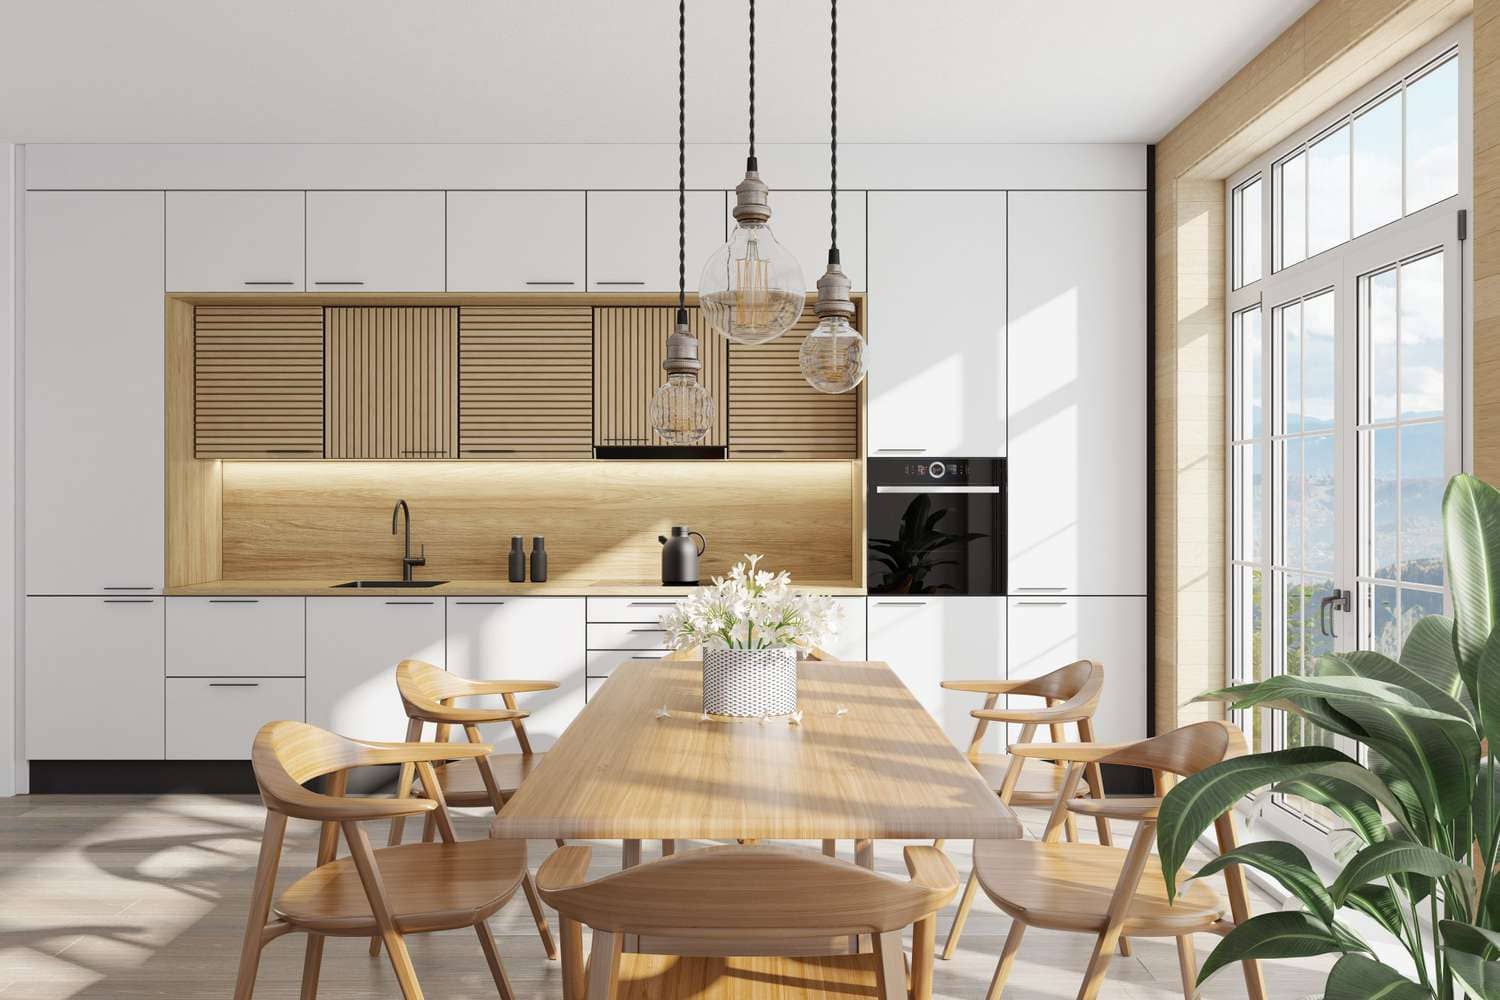 Stilul scandinav în designul interior a devenit extrem de popular în ultimii ani datorită aspectului său minimalist, clar și funcțional. Inspirat de țările nordice, designul scandinav este cunoscut pentru utilizarea luminii naturale, culorilor neutre și a materialelor naturale.